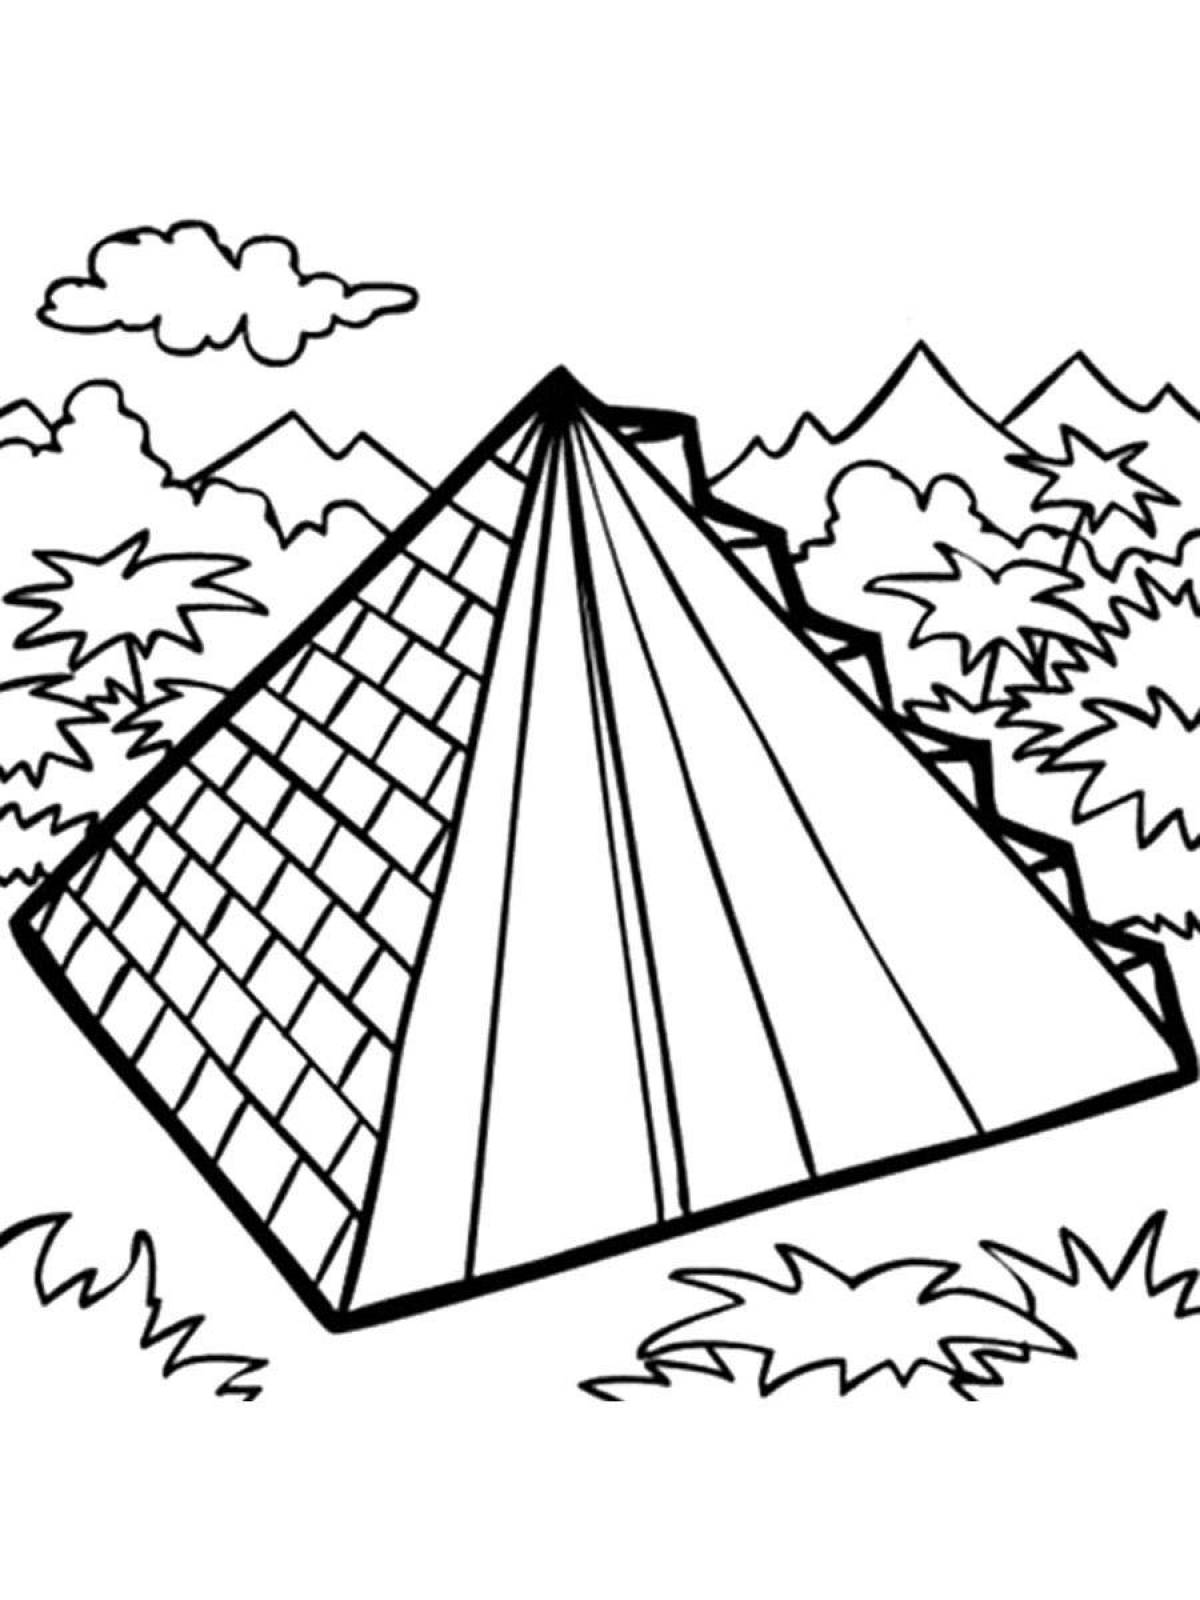 Ярко раскрашенная страница раскраски пирамиды